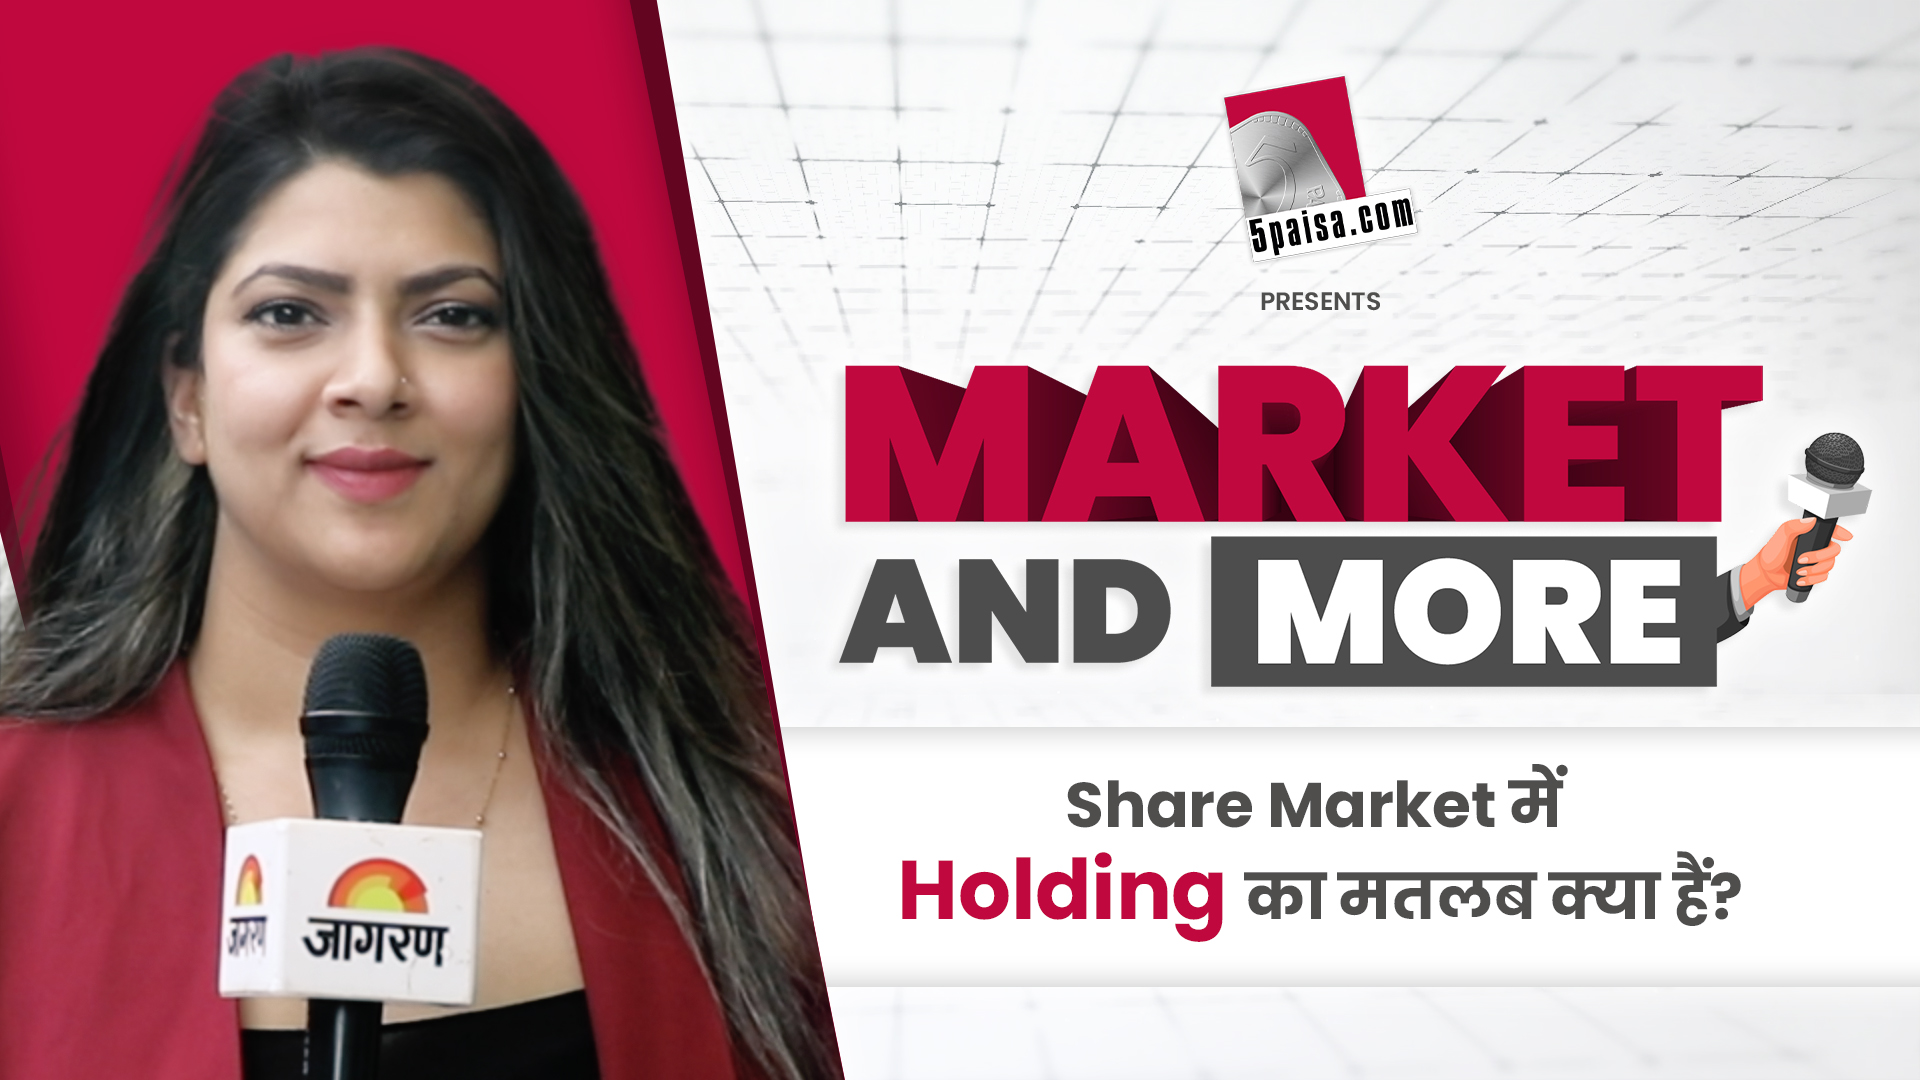 Share Market में Holding को लेकर क्या हैं Investors के विचार